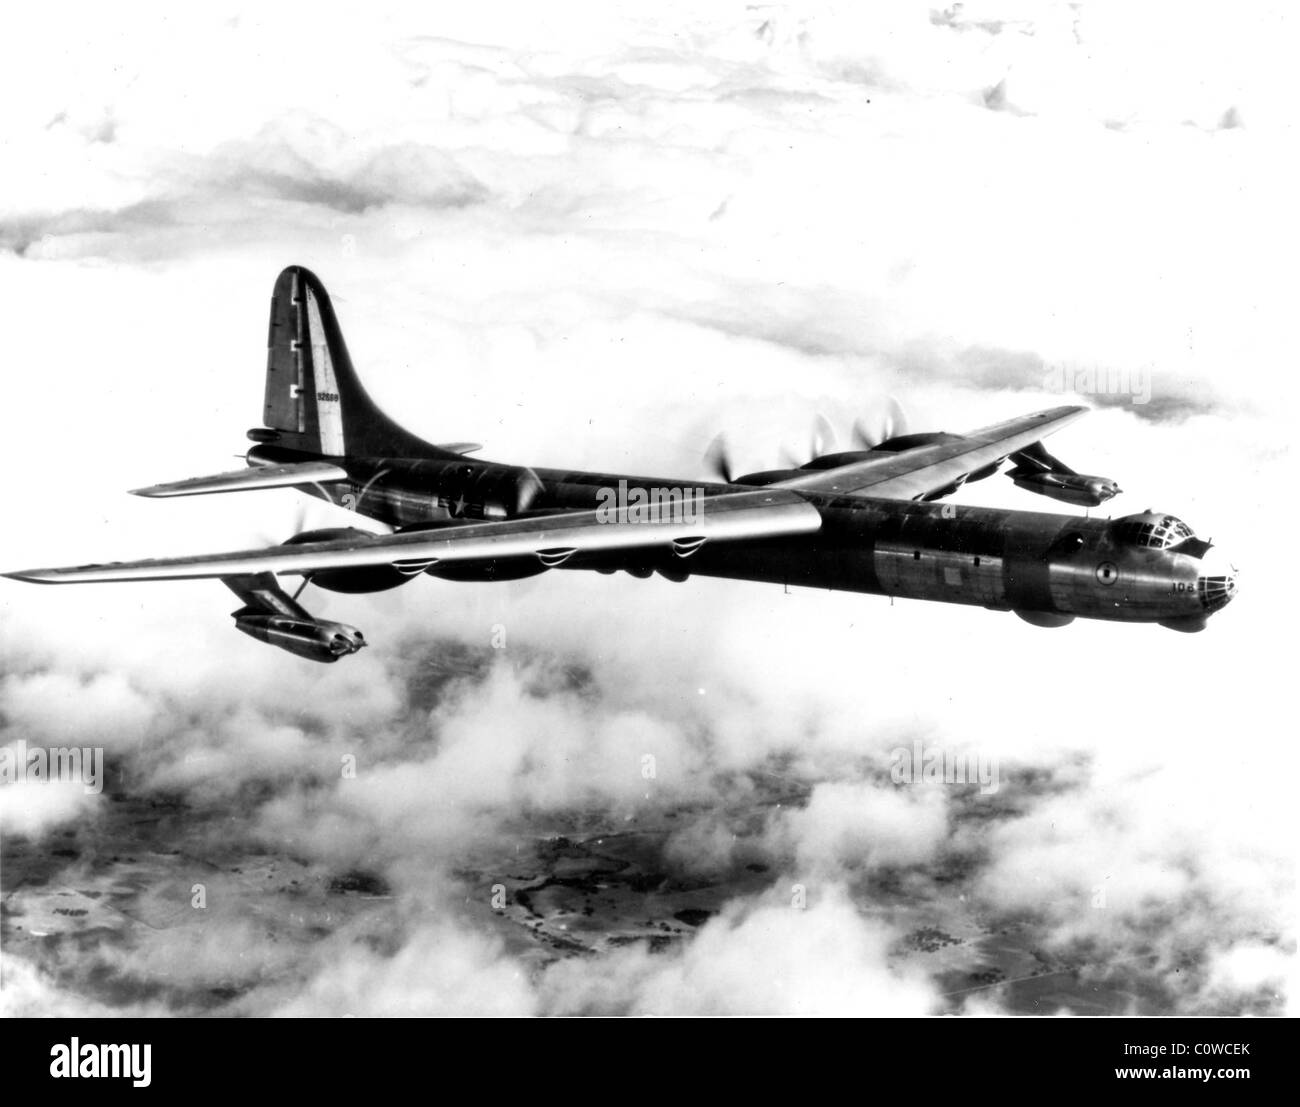 Convair RB-36-D, el jet versión aumentada de la Fuerza Aérea de los Estados Unidos de bombarderos estratégicos intercontinentales. Foto de stock